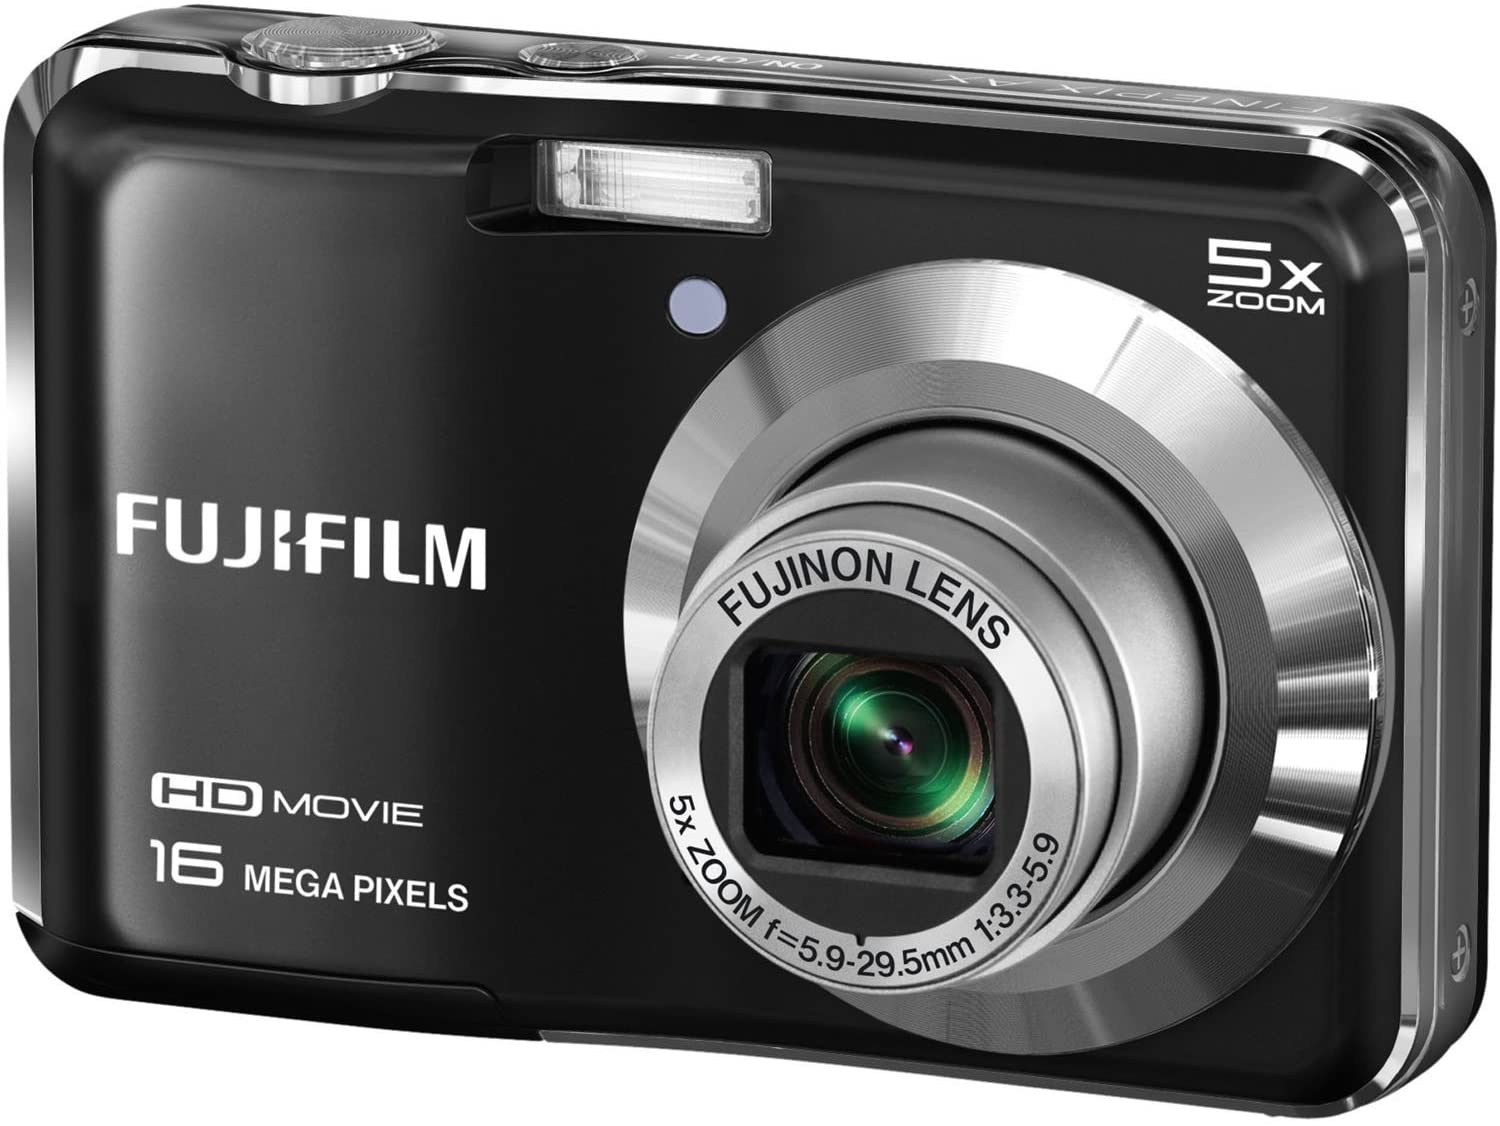 Camara Fotografica Fujifilm Finepix  AX655 16Megapixeles con 5 x Zoom óptico, HD 720p de vídeo Recordin G, 2.7 pulgadas pantalla LCD (certificado restaurado) Black